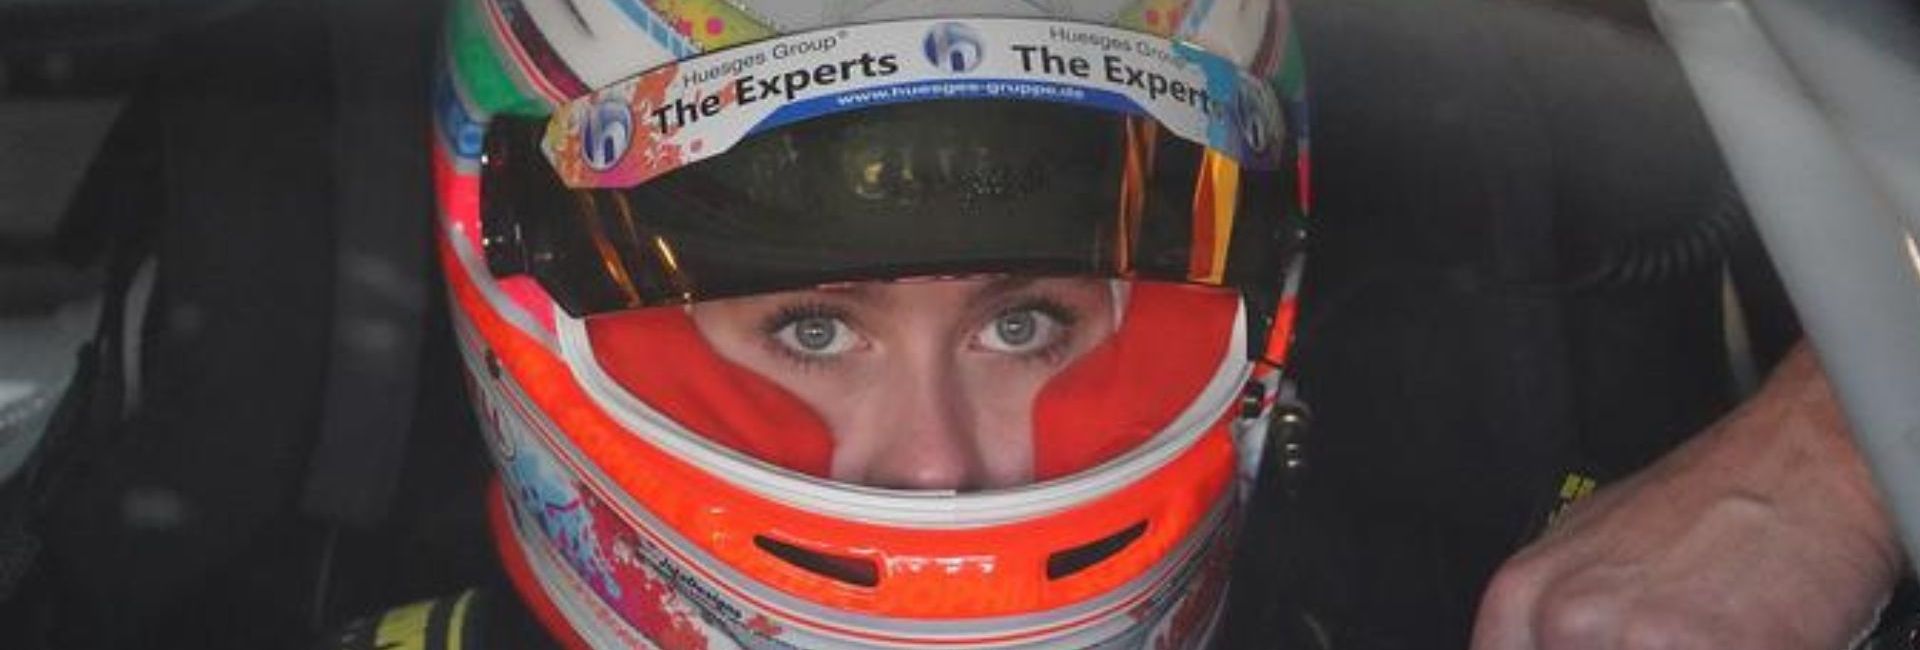 formule1-sportautomobile-femme-sexisme-inclusivité-france-renault-droit-des-femmes-